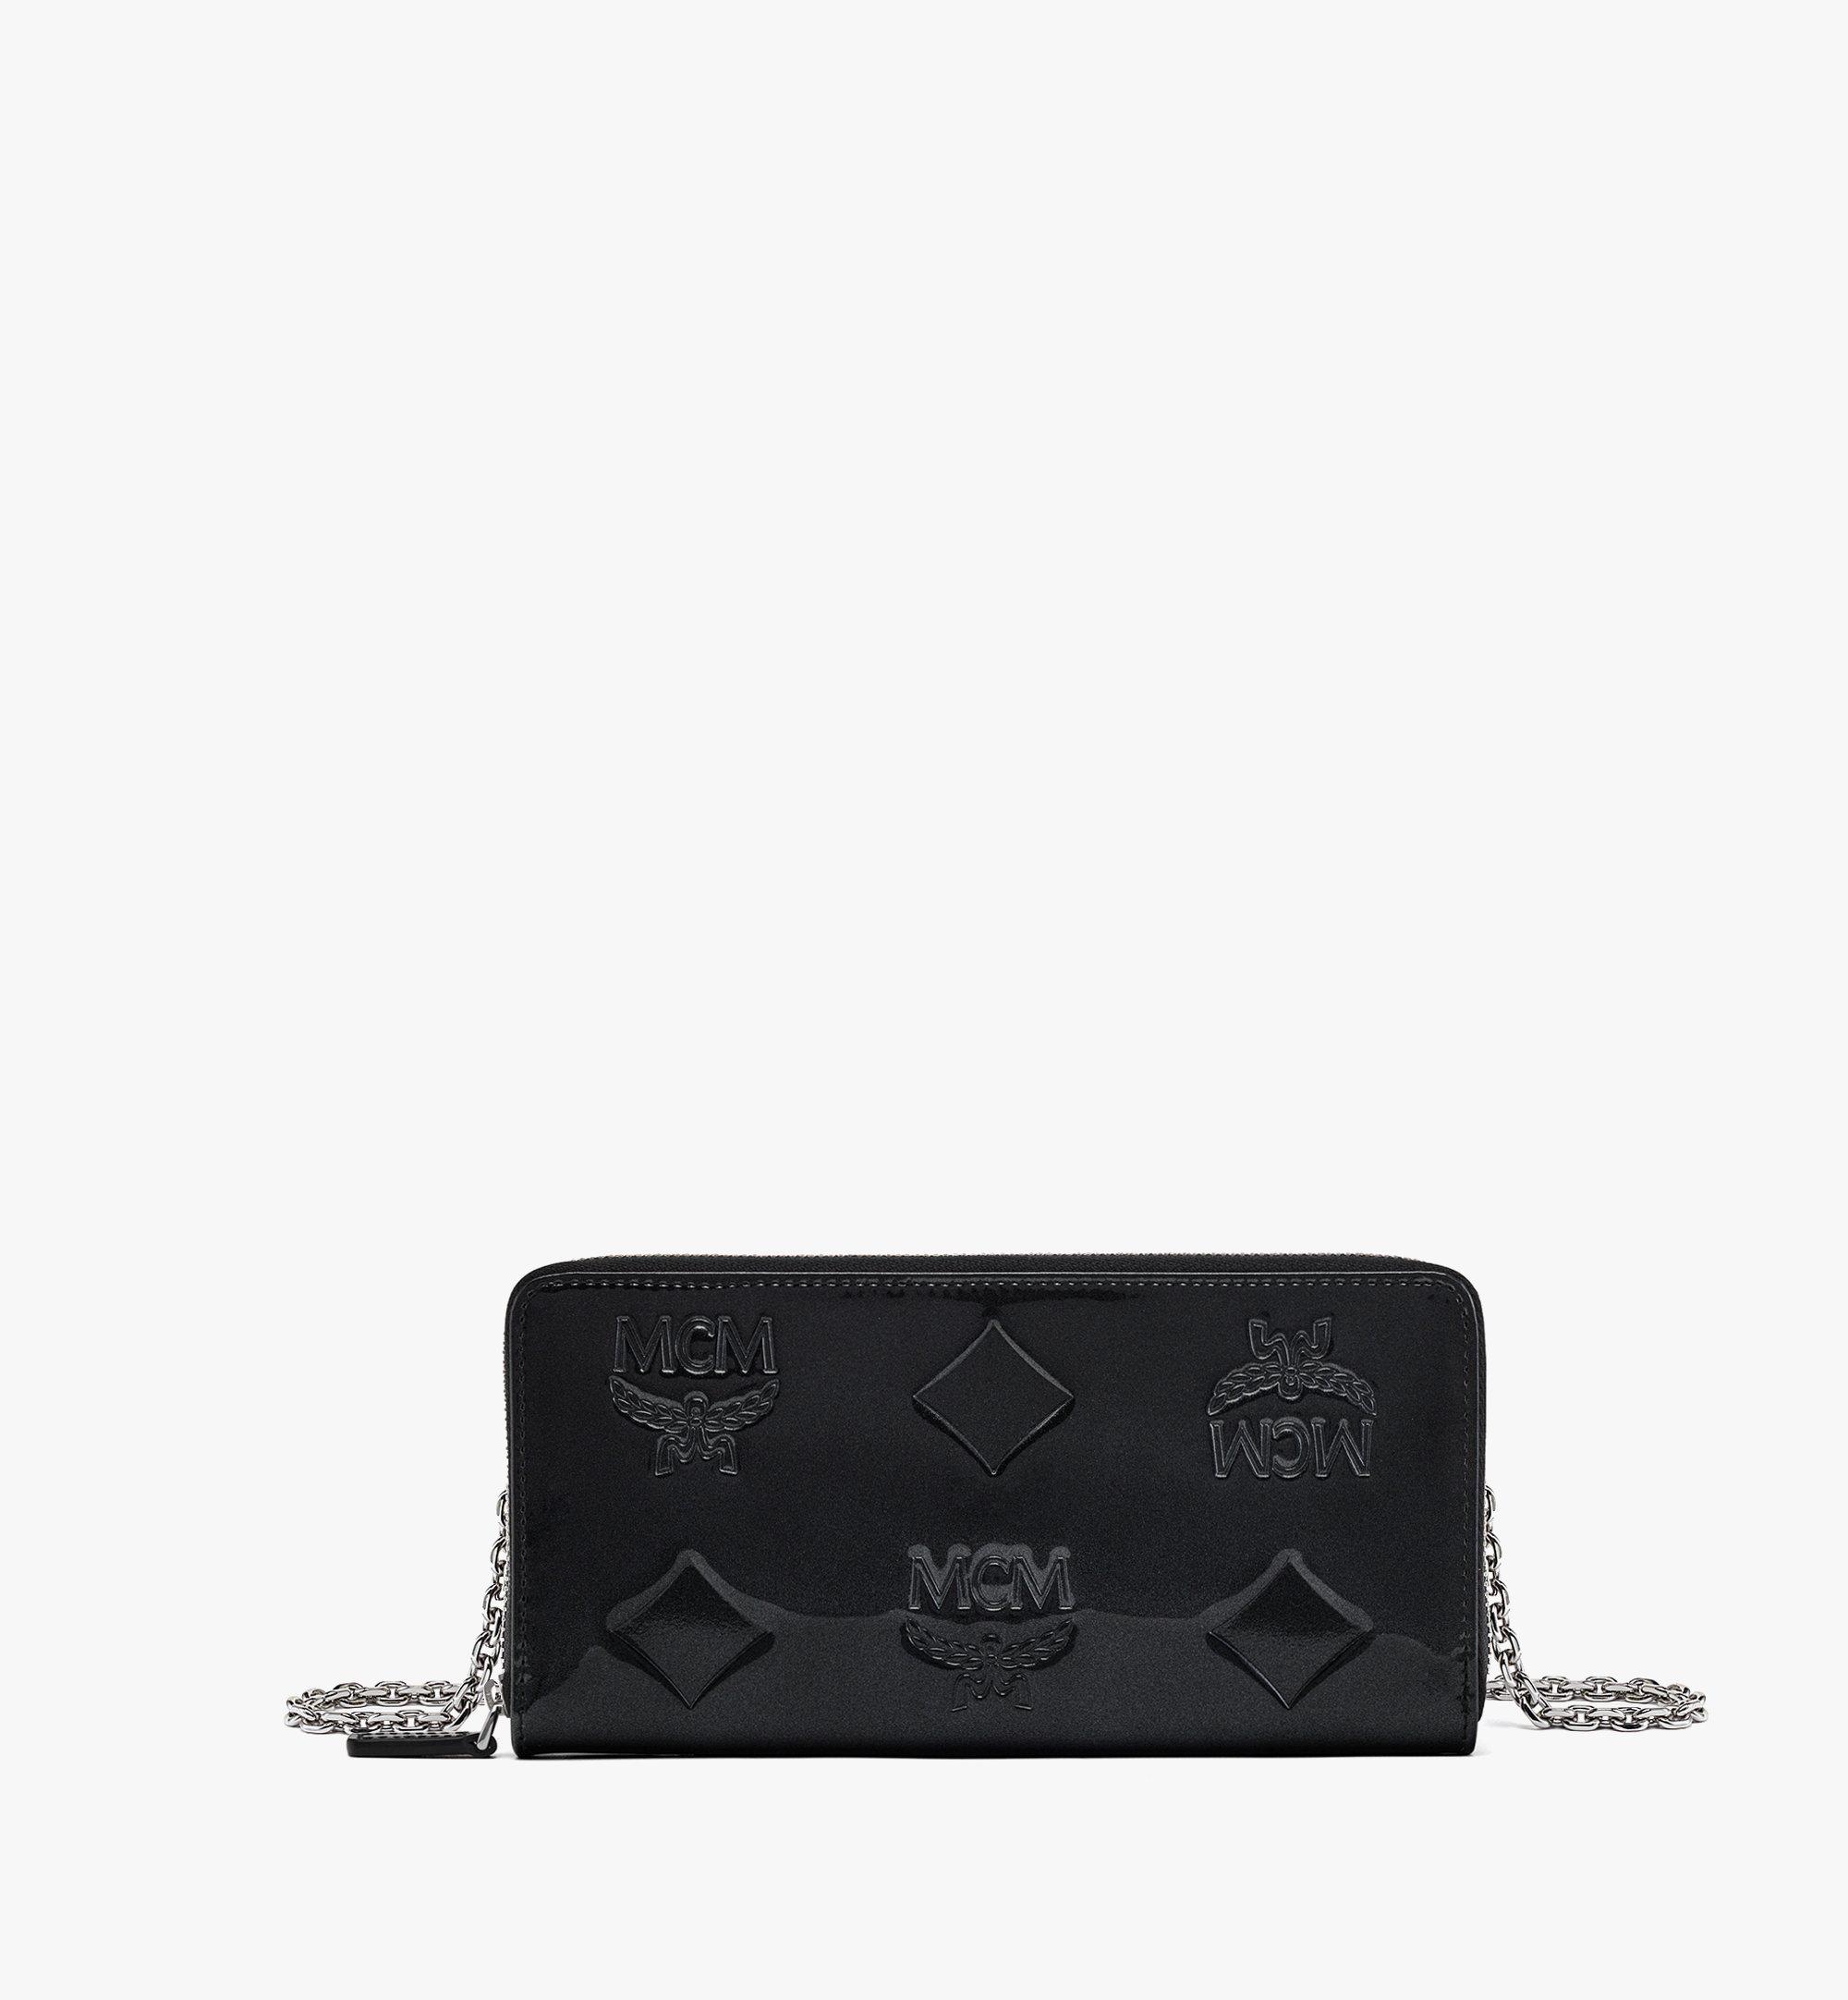 MCM Aren Chain Zip Around Wallet in Maxi Patent Leather Black MYLDATA05BK001 Alternate View 1